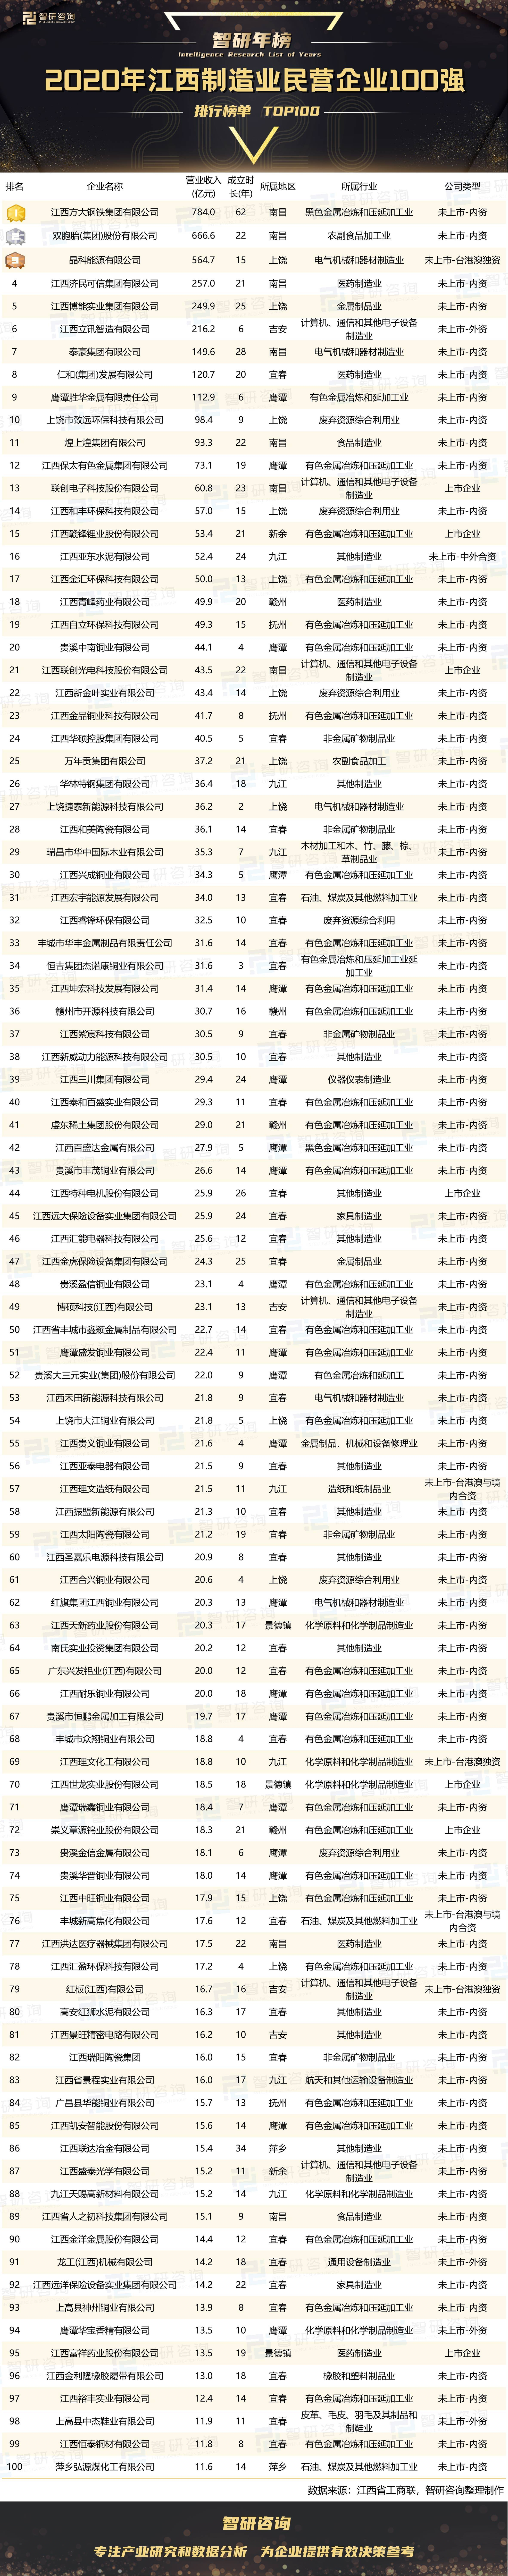 制造企业排行_2020年河南民营企业制造业100强排行榜:1家上市企业位居榜单榜首